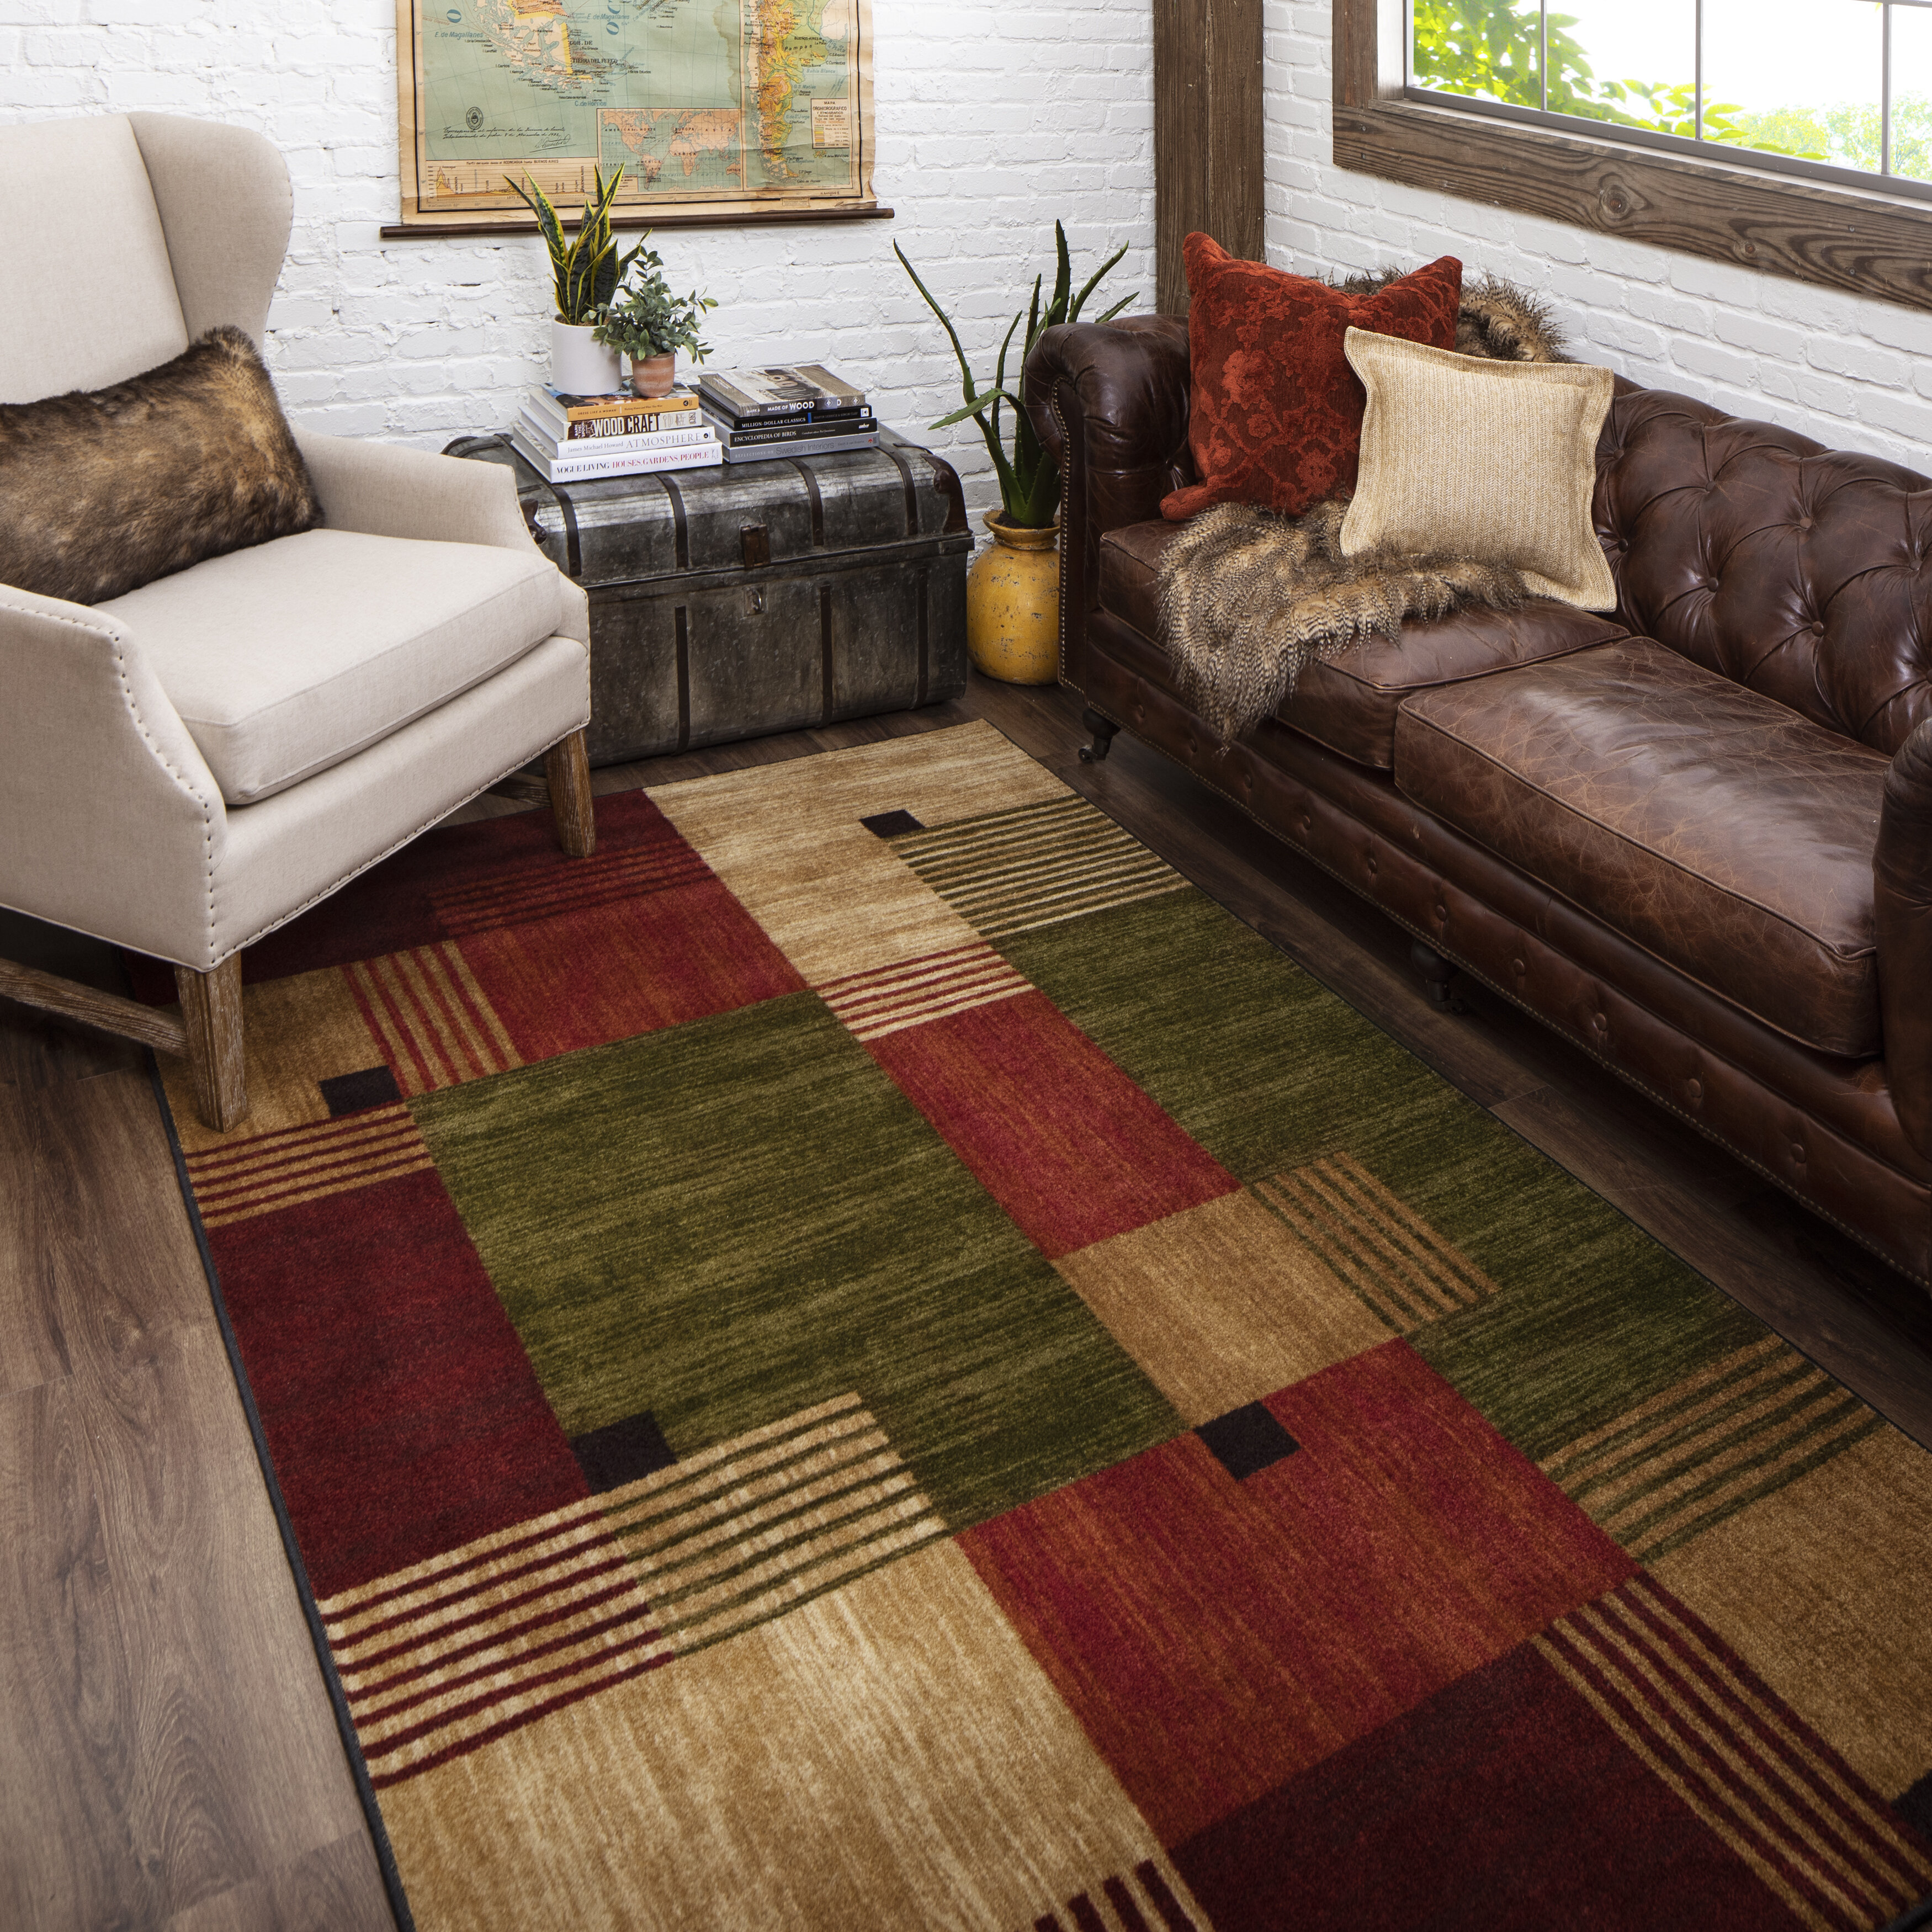 Modern VEGAS Area Rug Bedroom Living Room Soft Wave Pattern Carpets Door Mats UK 